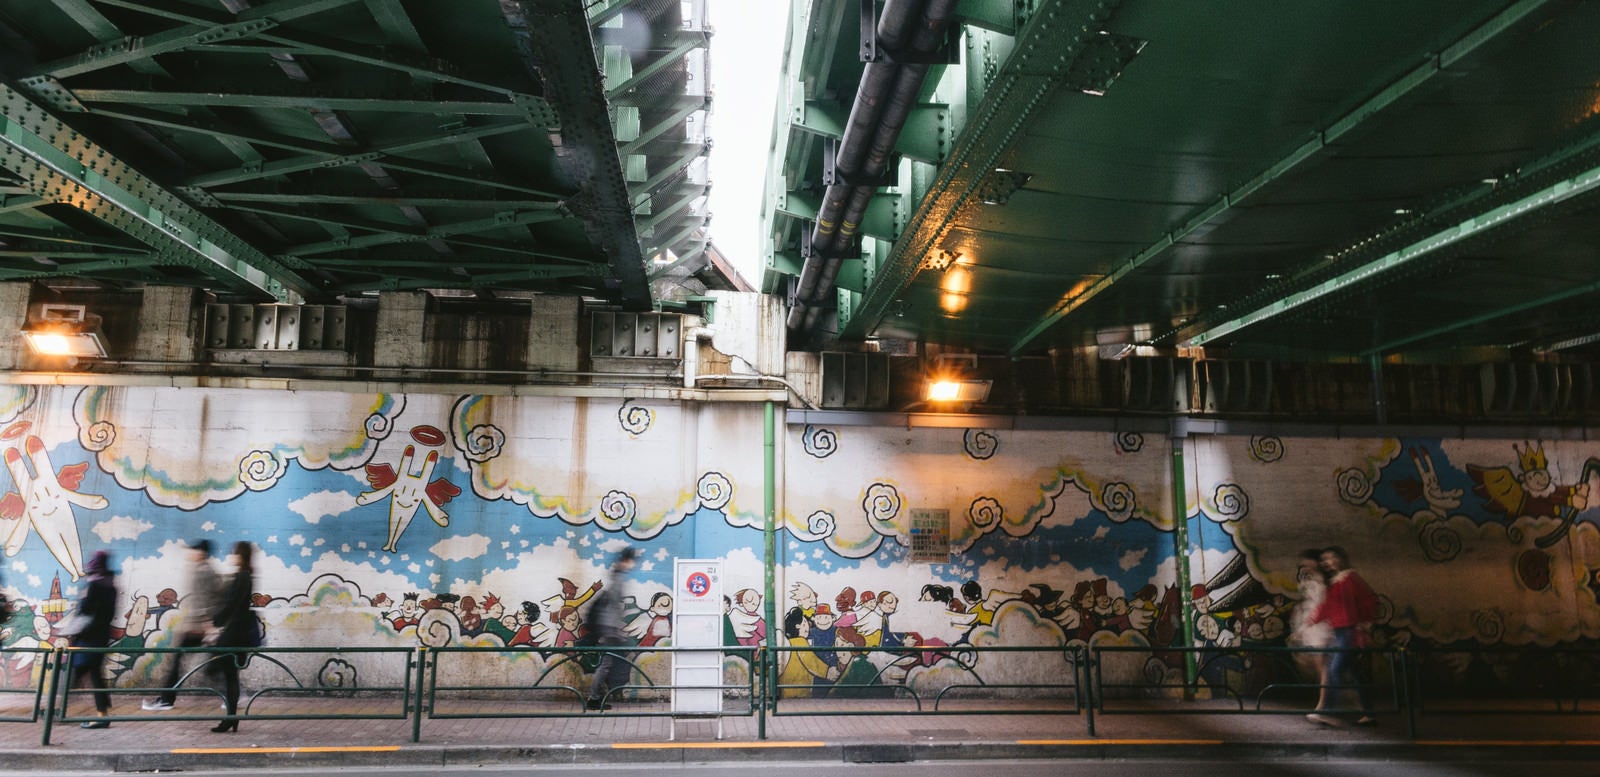 「新大久保駅前のガード下にある壁画」の写真